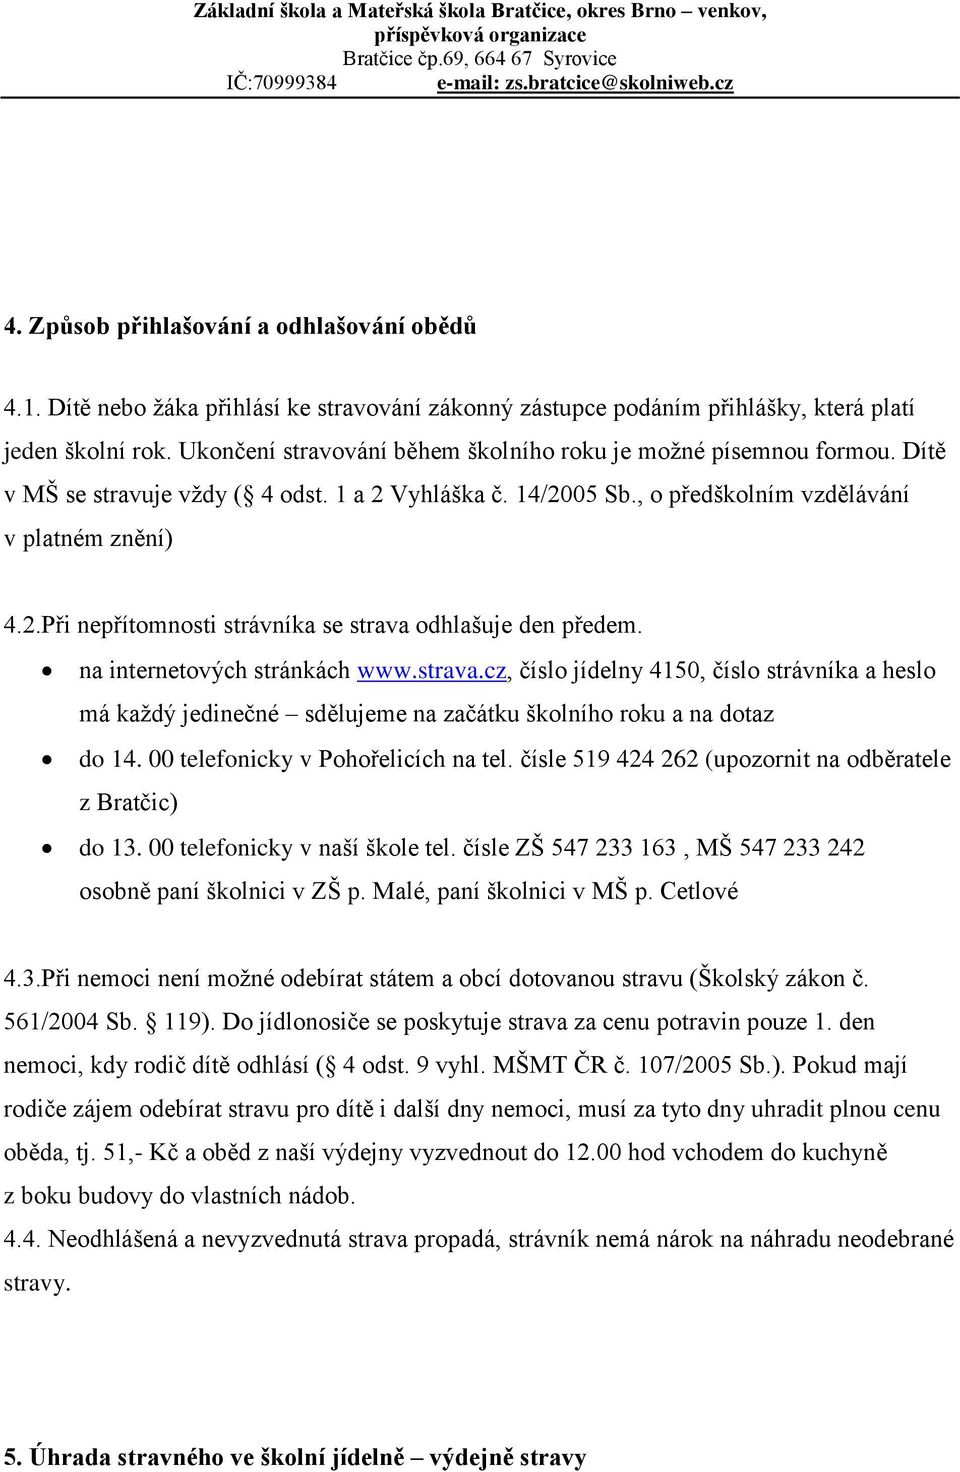 na internetových stránkách www.strava.cz, číslo jídelny 4150, číslo strávníka a heslo má každý jedinečné sdělujeme na začátku školního roku a na dotaz do 14. 00 telefonicky v Pohořelicích na tel.